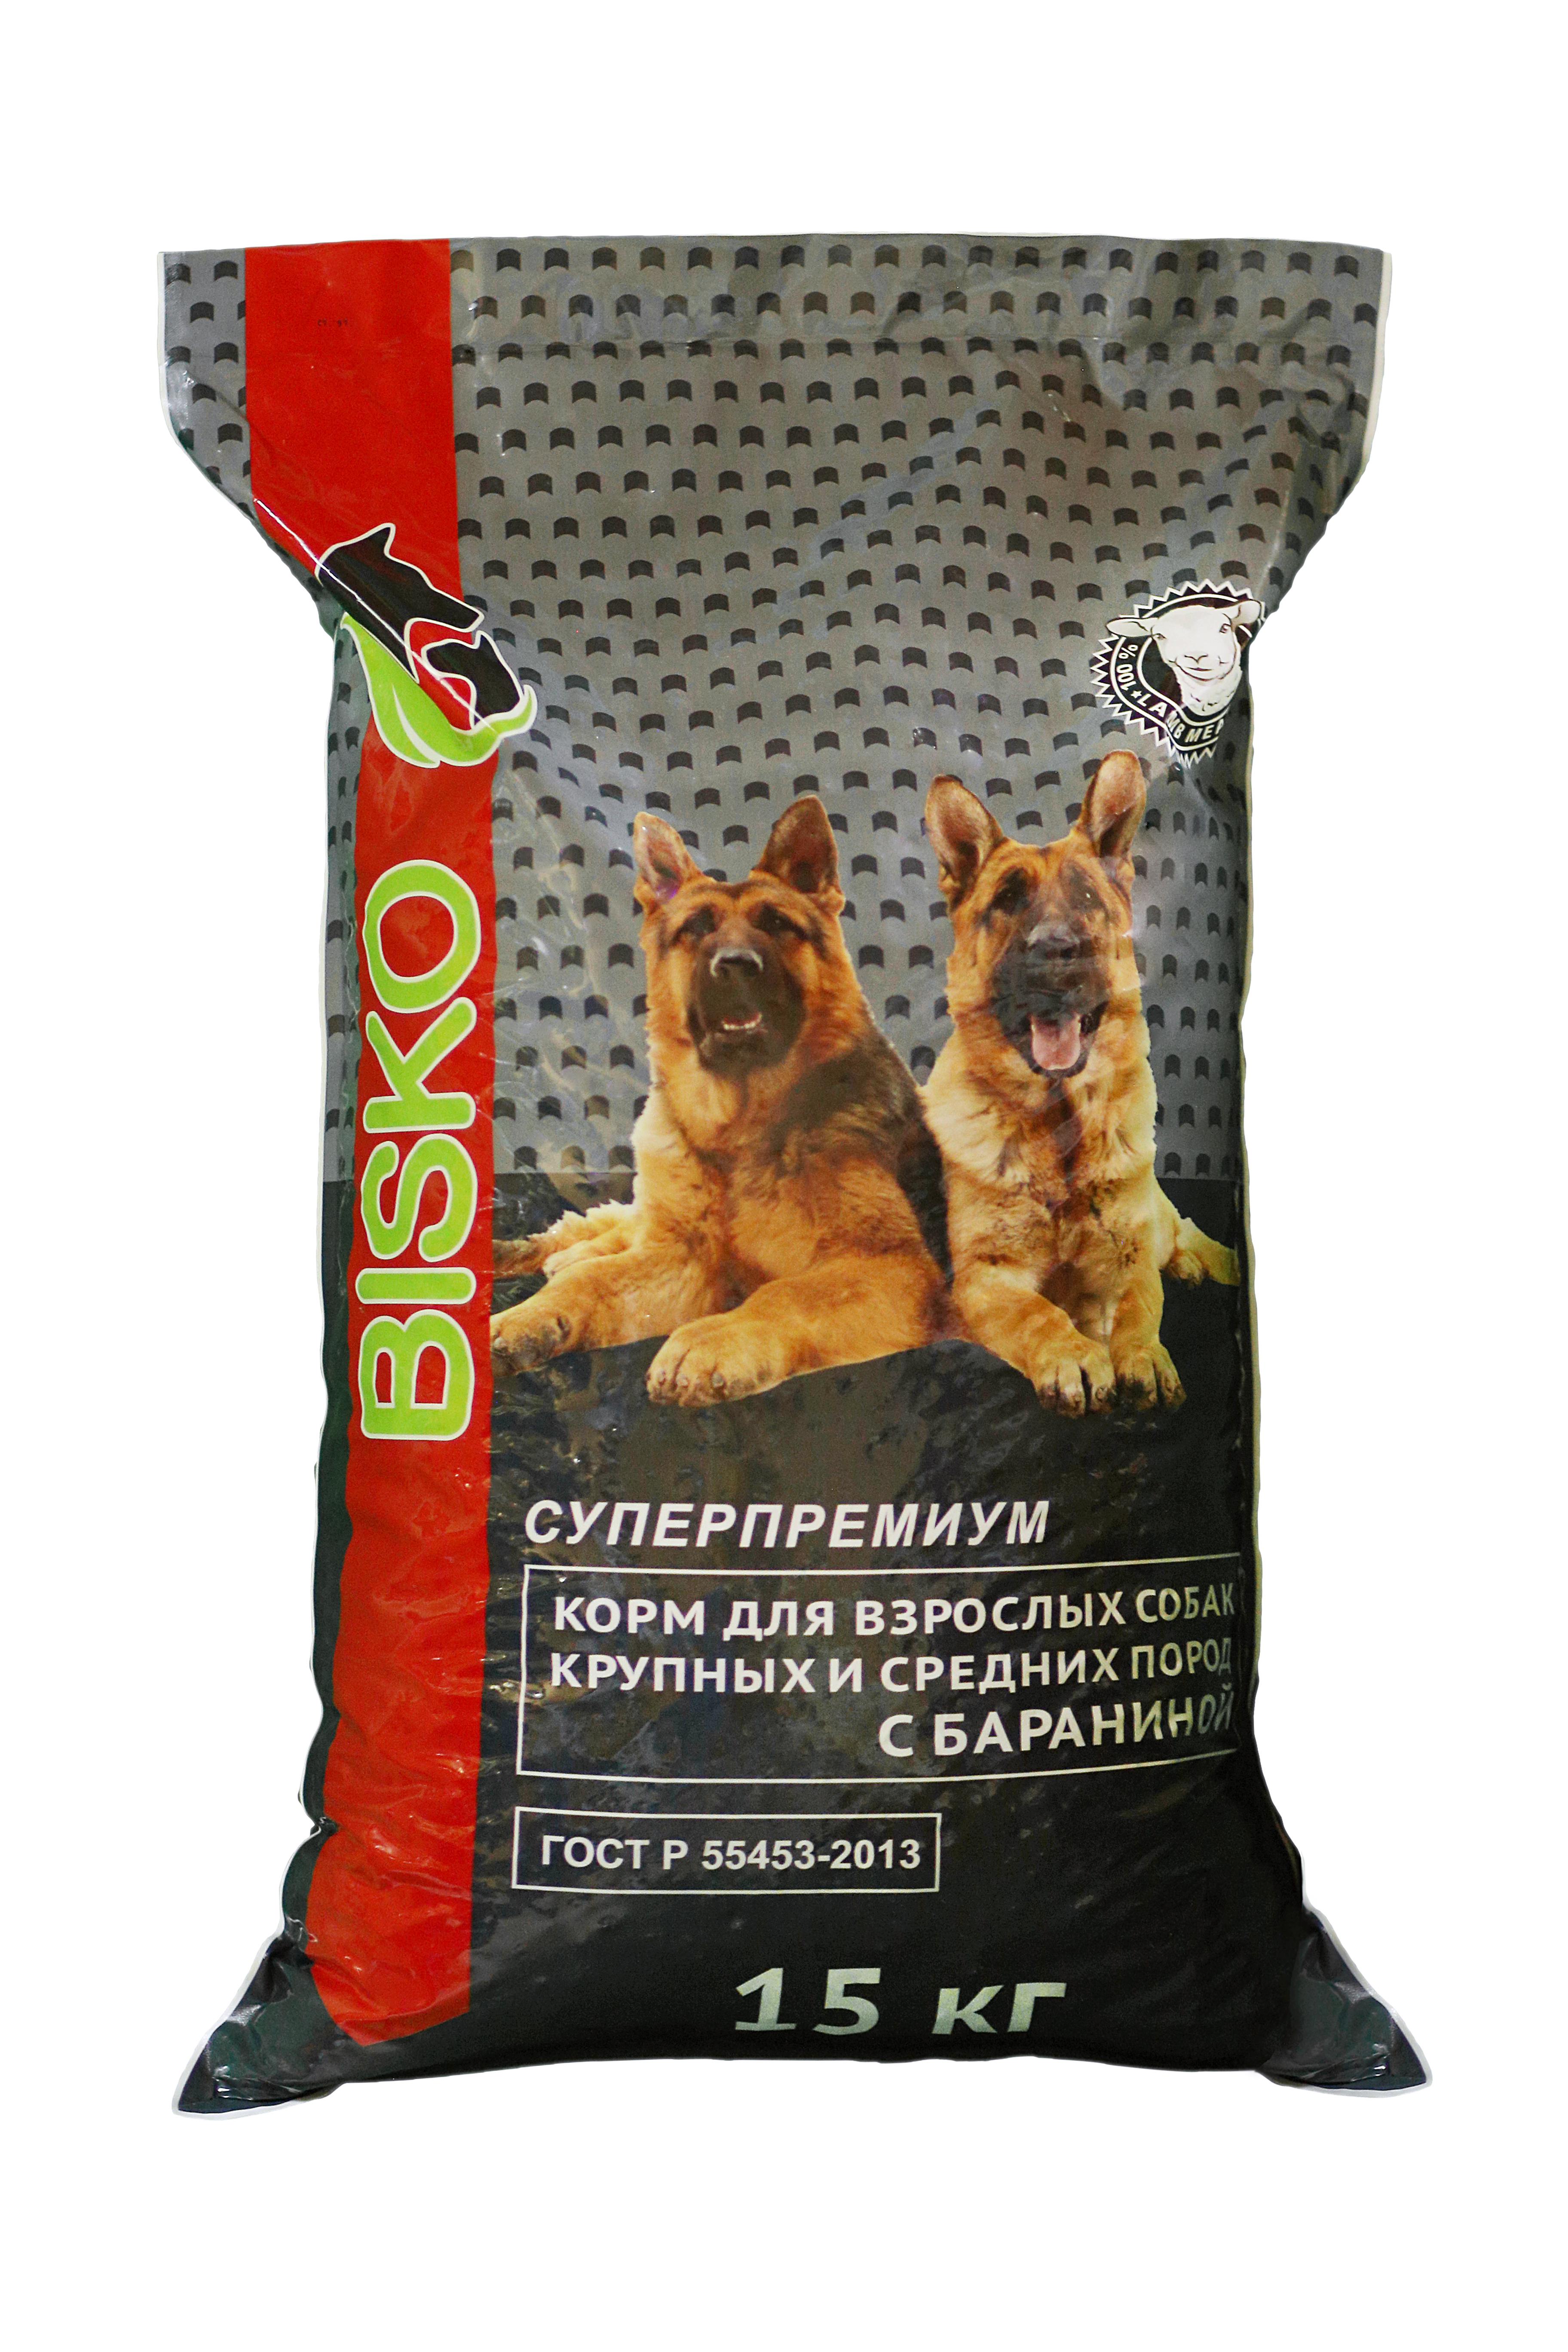 Дешевые корма для собак 15 кг. Биско премиум корм для собак. Bisko Premium корм для собак 15кг. Корм Bisco для собак с бараниной. Bisko Биско премиум для крупных собак 15кг.